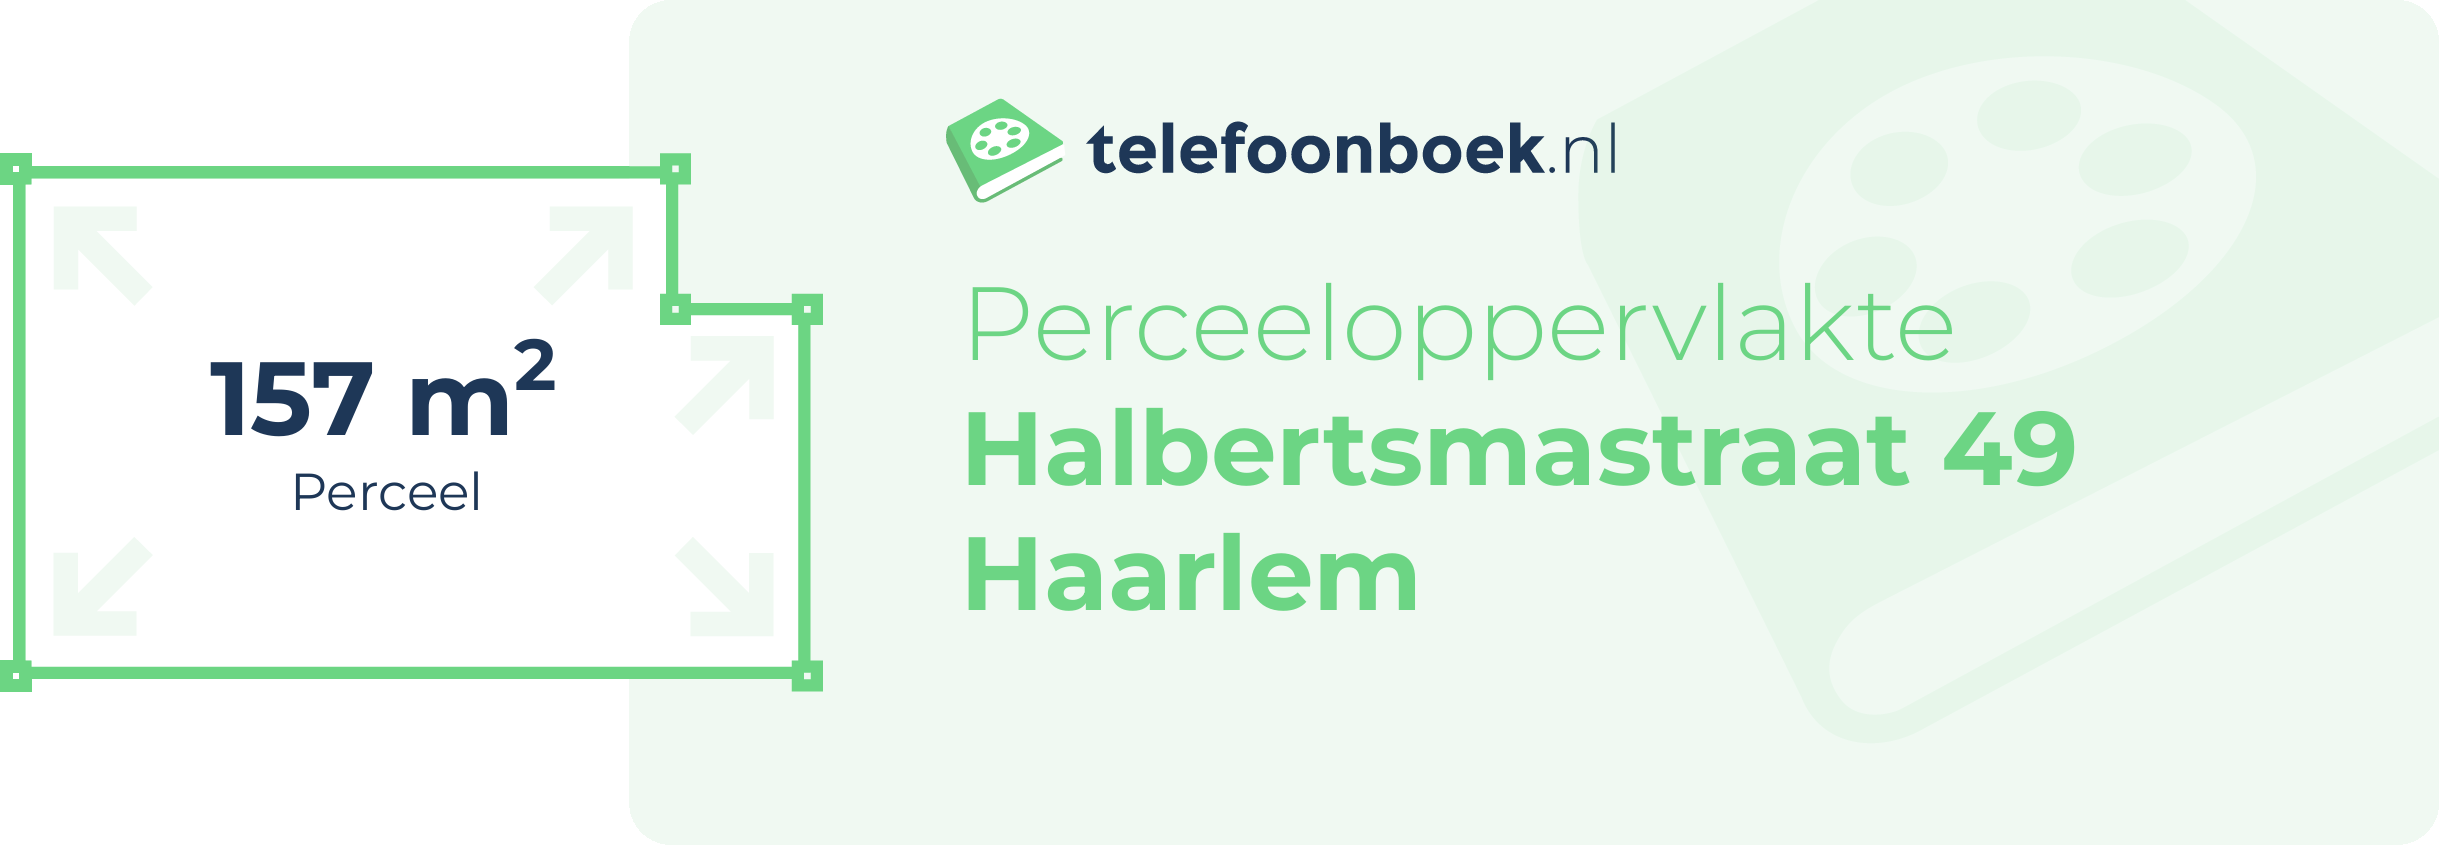 Perceeloppervlakte Halbertsmastraat 49 Haarlem